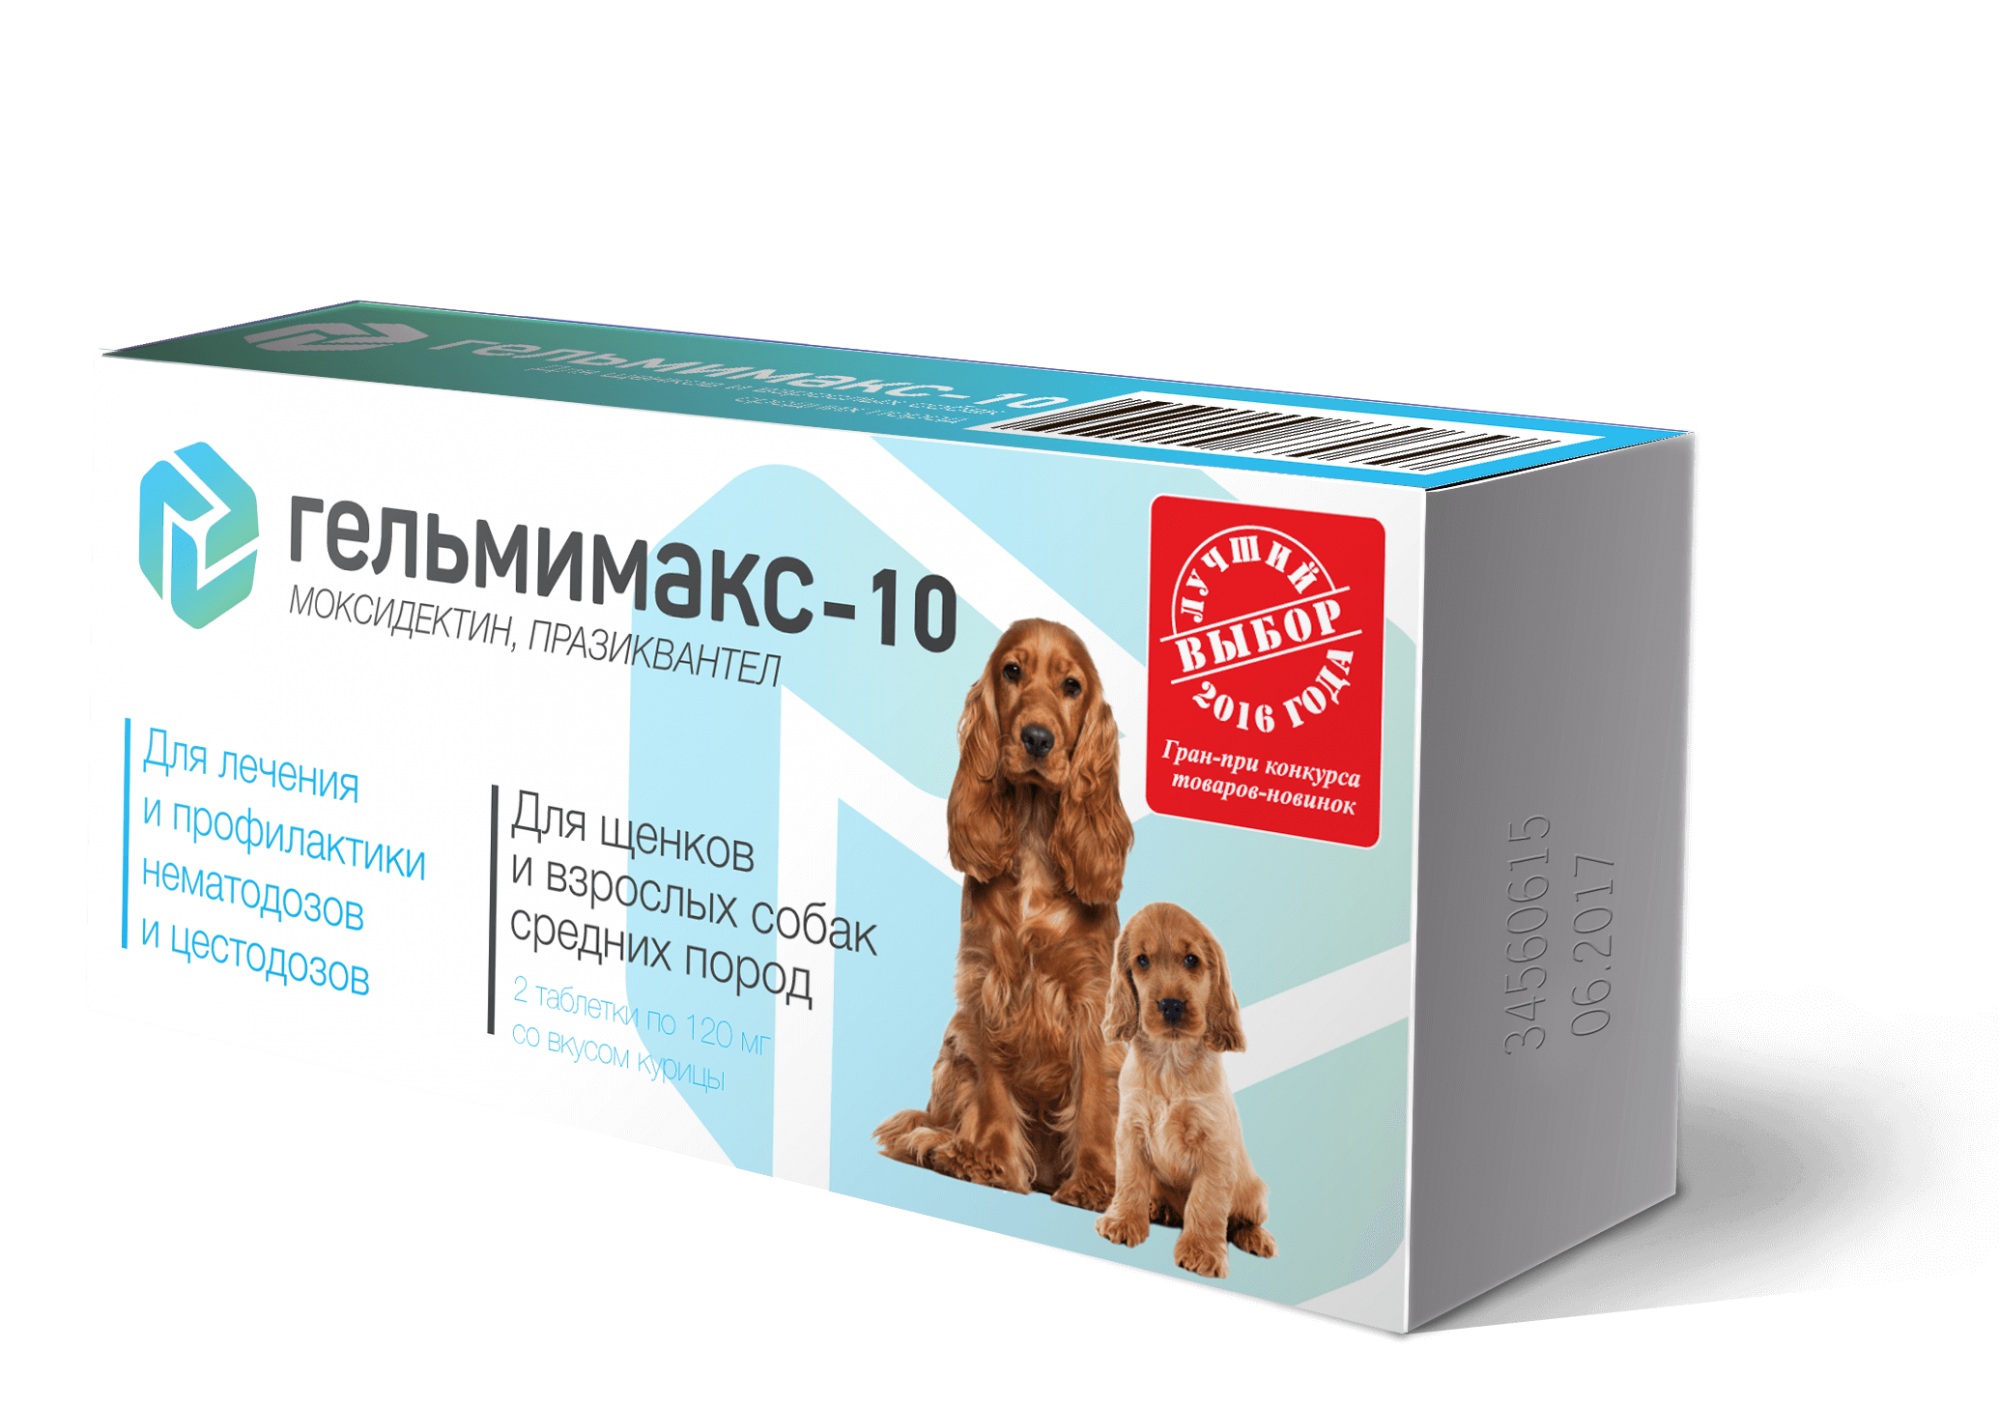  Гельмимакс-10 для щенков и собак средних пород уп 2 таб для питомцев
